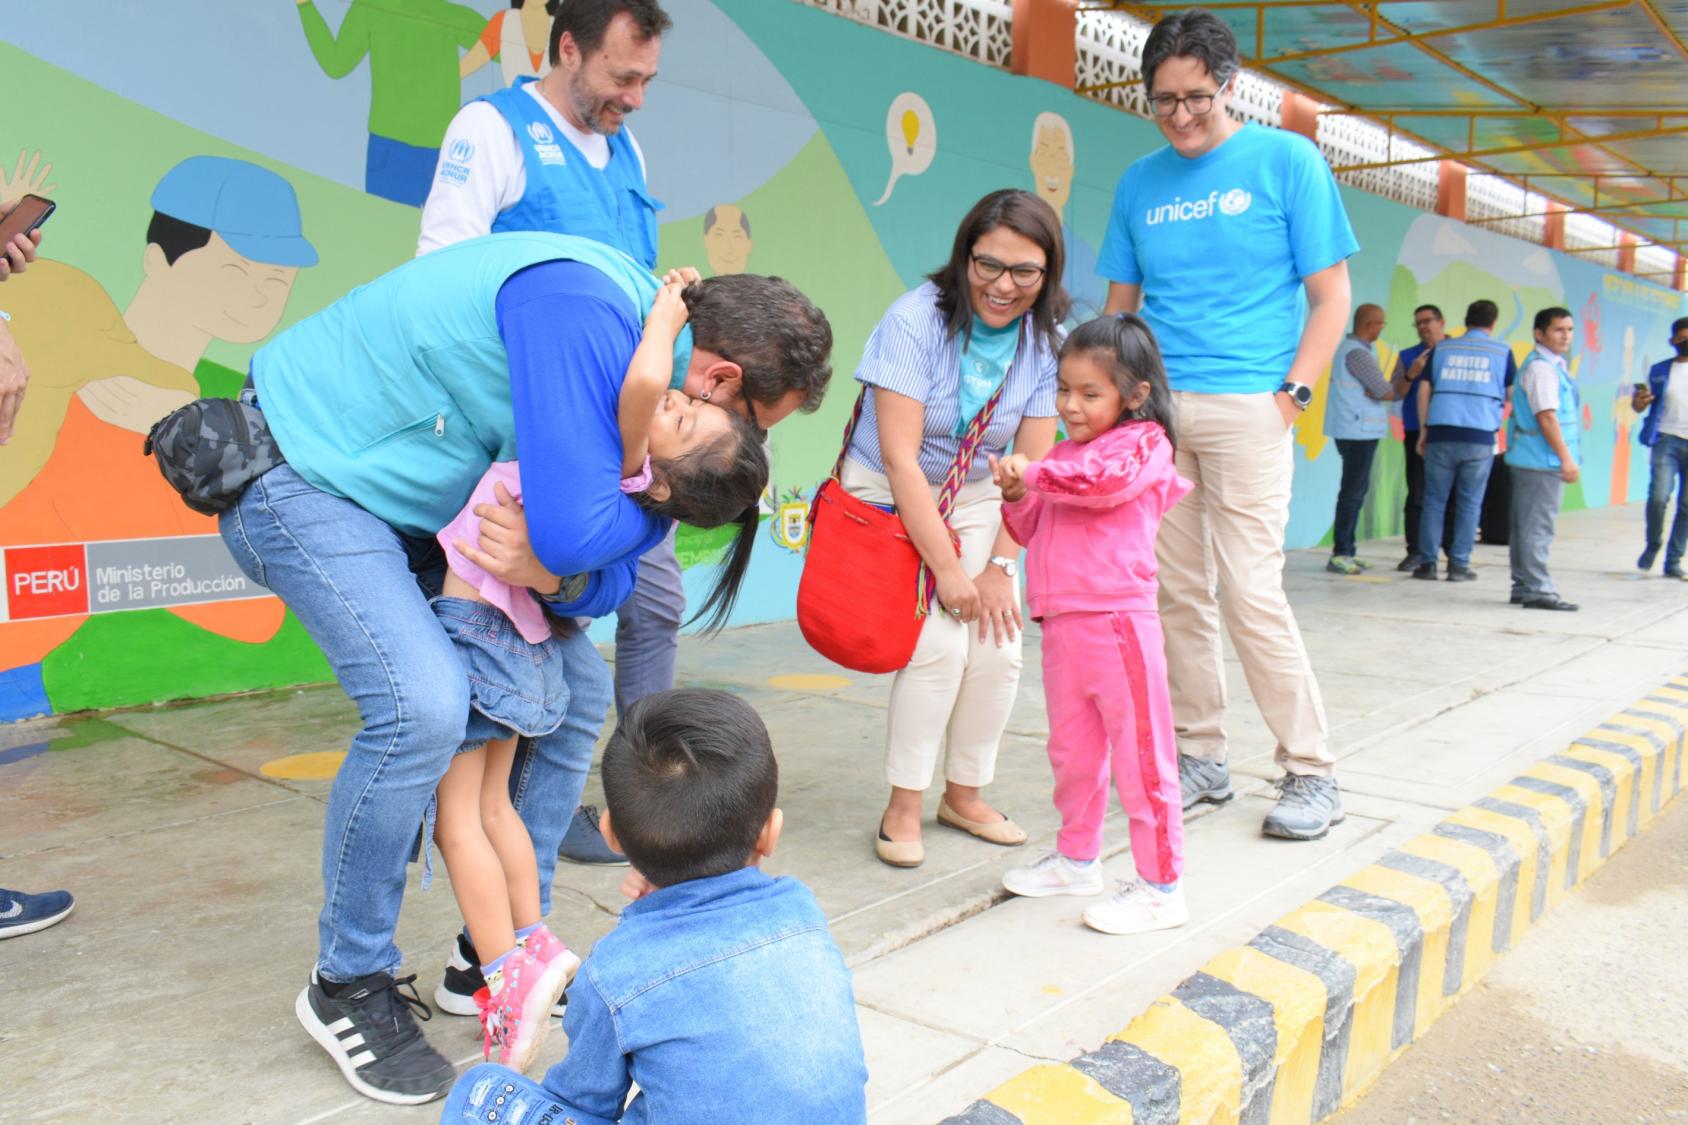 Представители ООН в Перу и Эквадоре общаются с венесуэльскими детьми, получающими помощь в пунктах помощи и ориентации мигрантов и беженцев в Тумбесе, городе на границе между Перу и Эквадором.